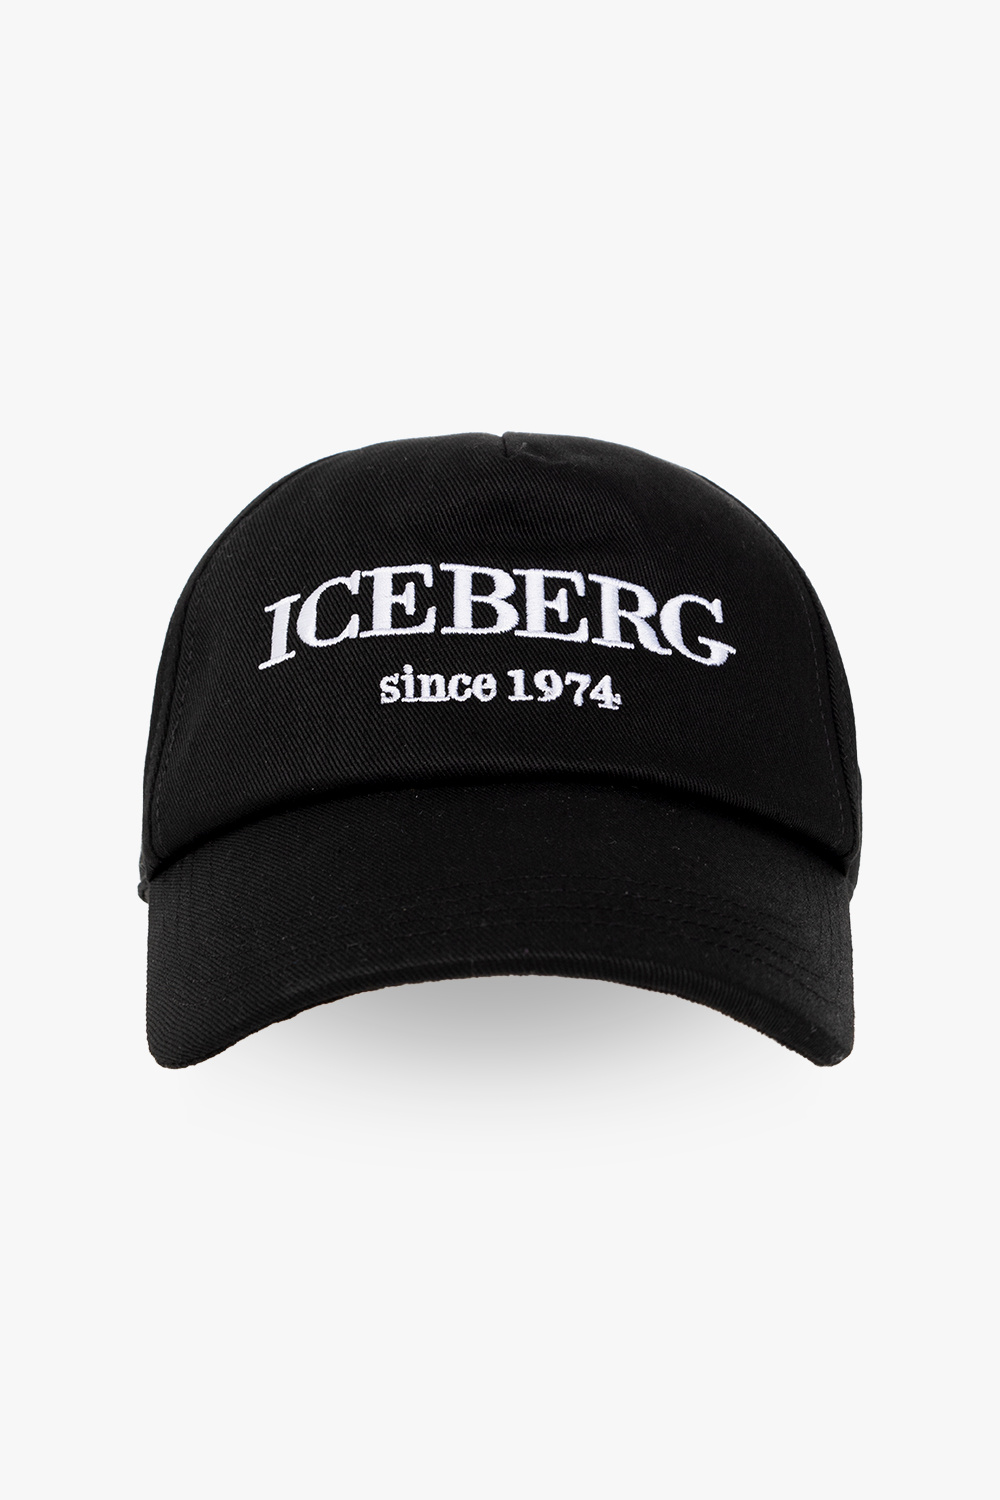 Iceberg hats cap